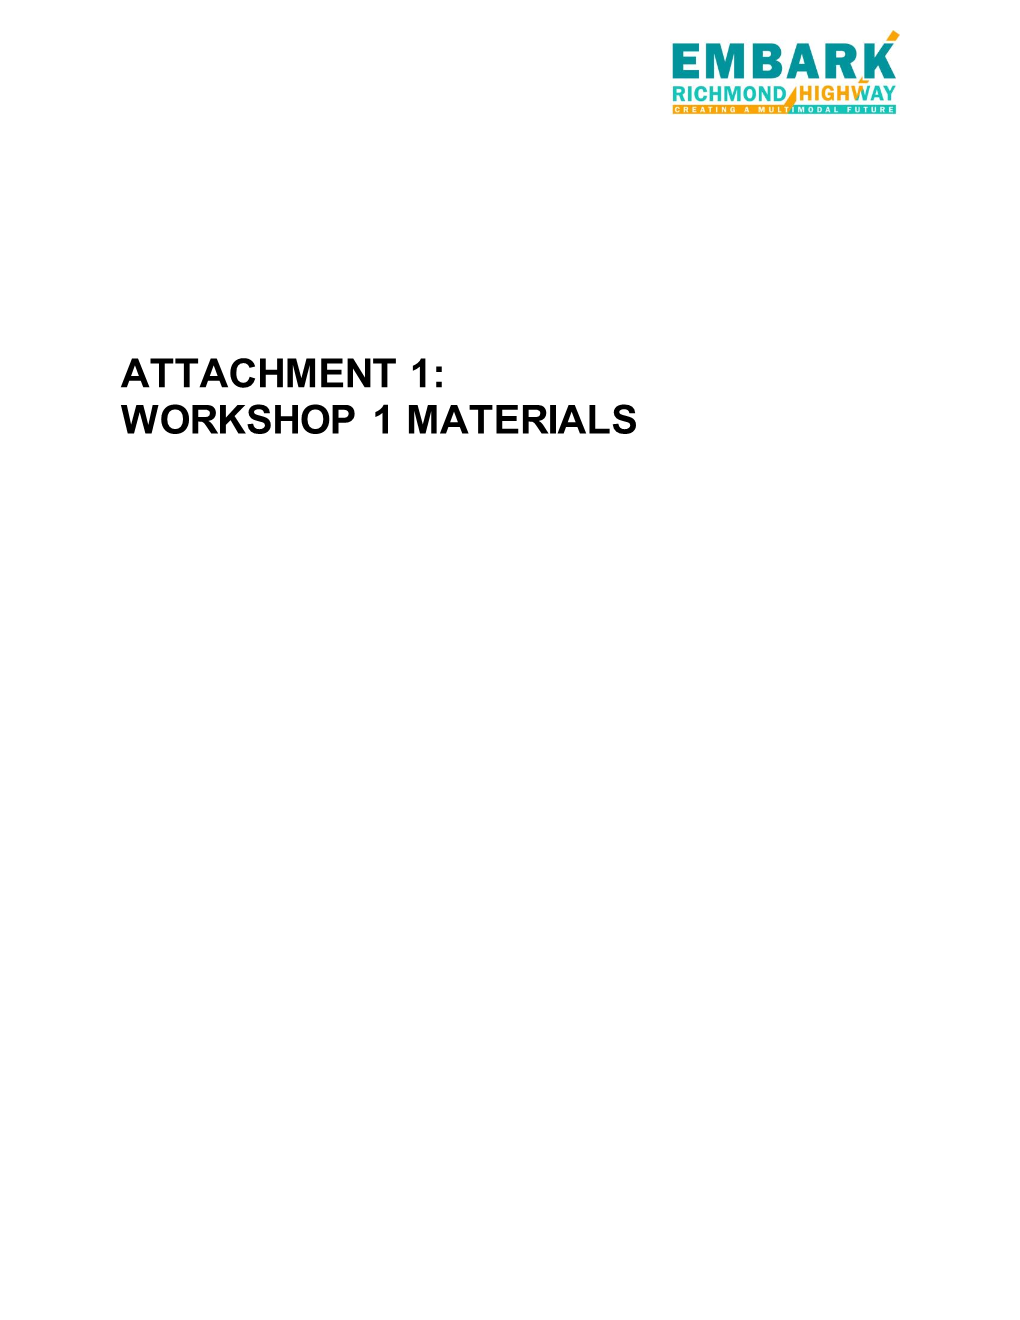 Workshop 1 Materials